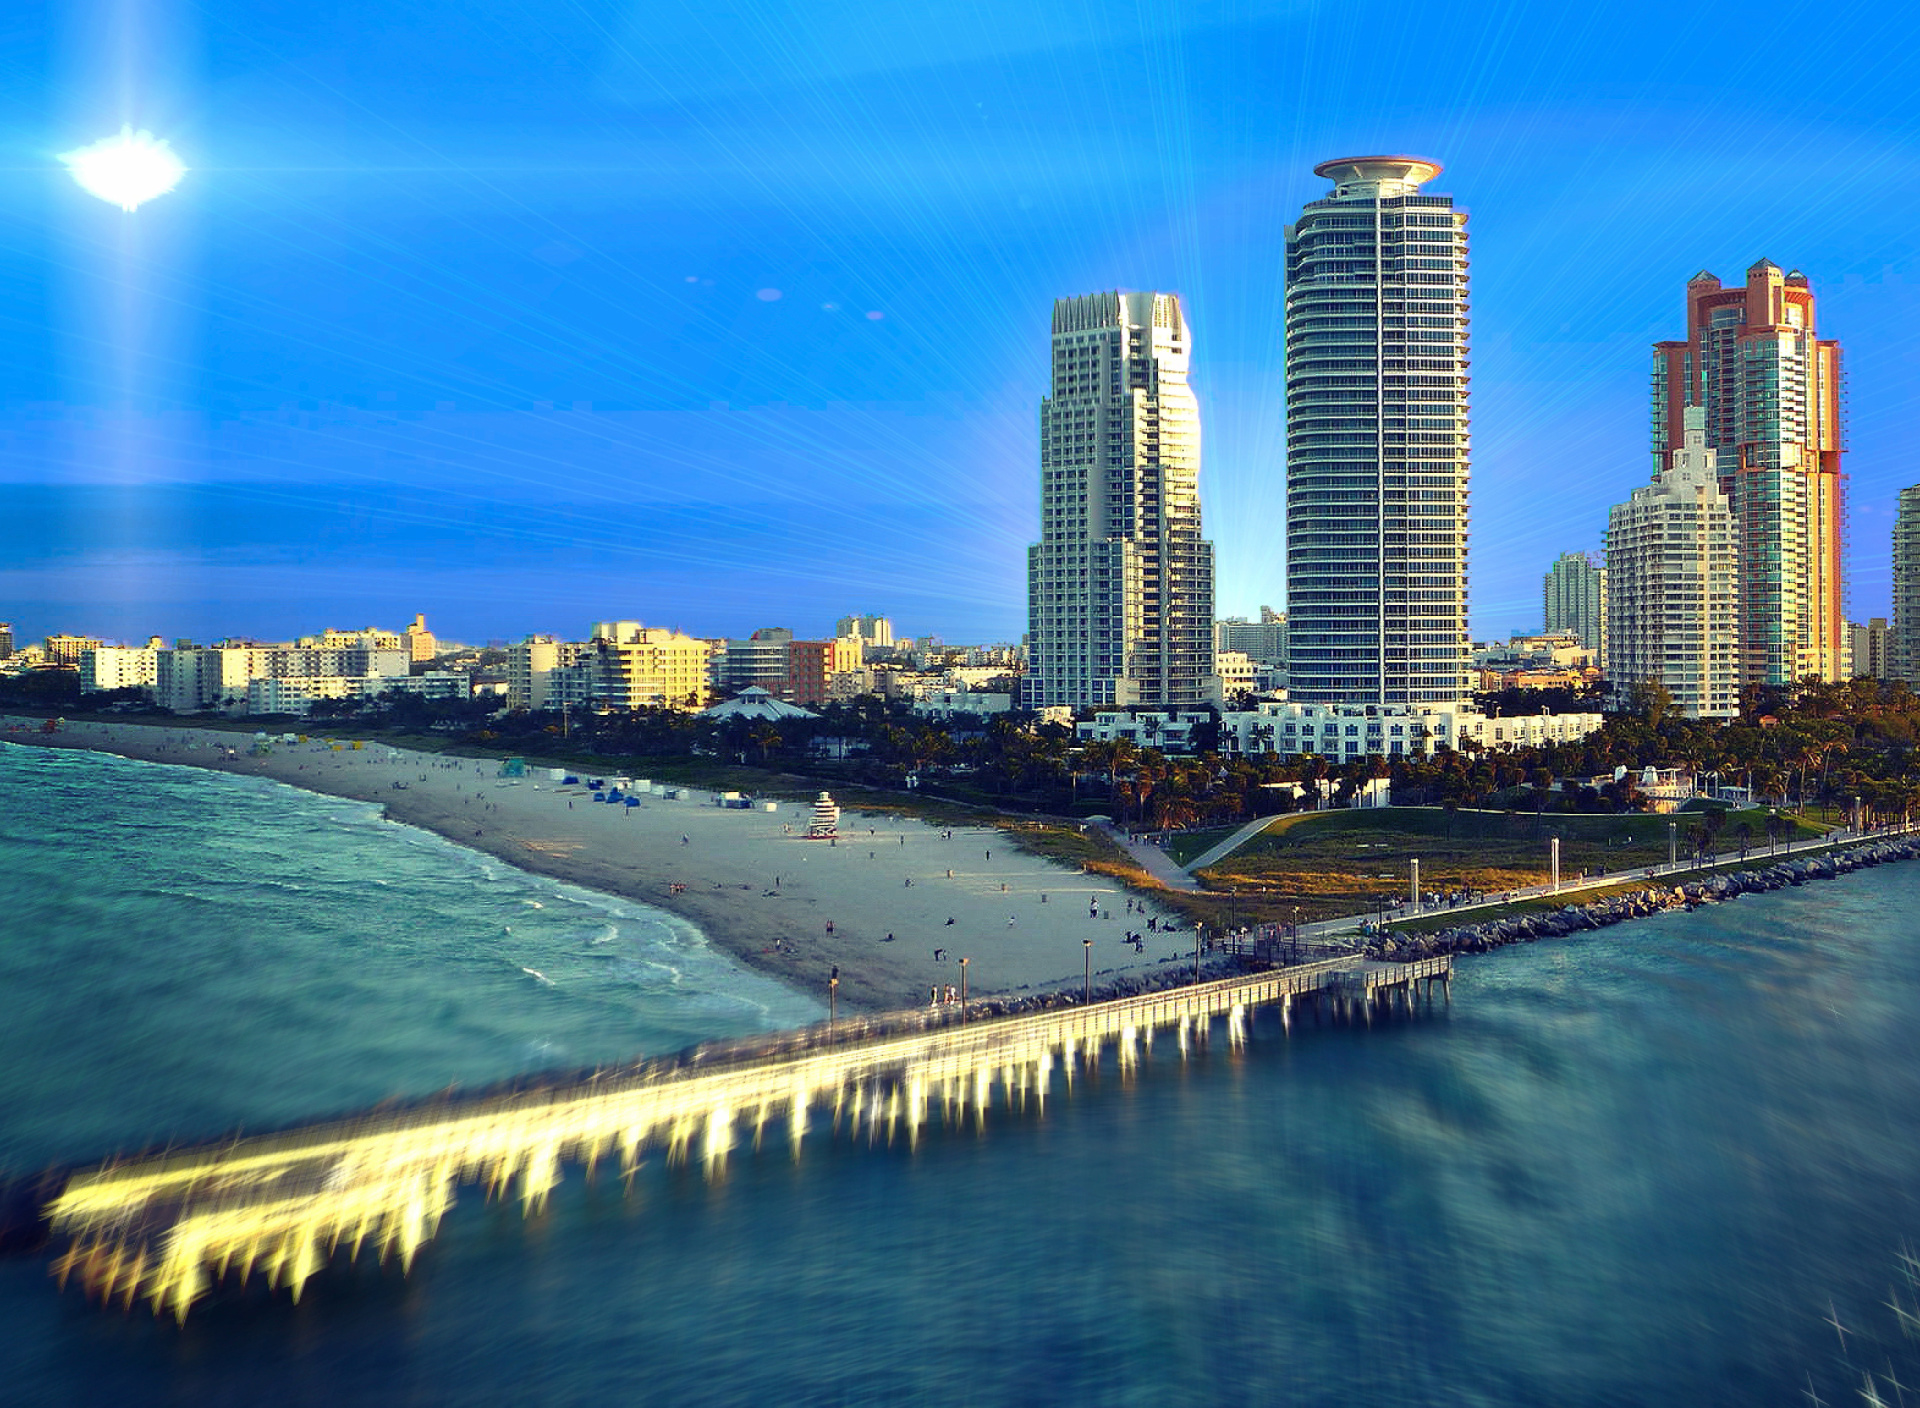 Sfondi Miami Beach with Hotels 1920x1408